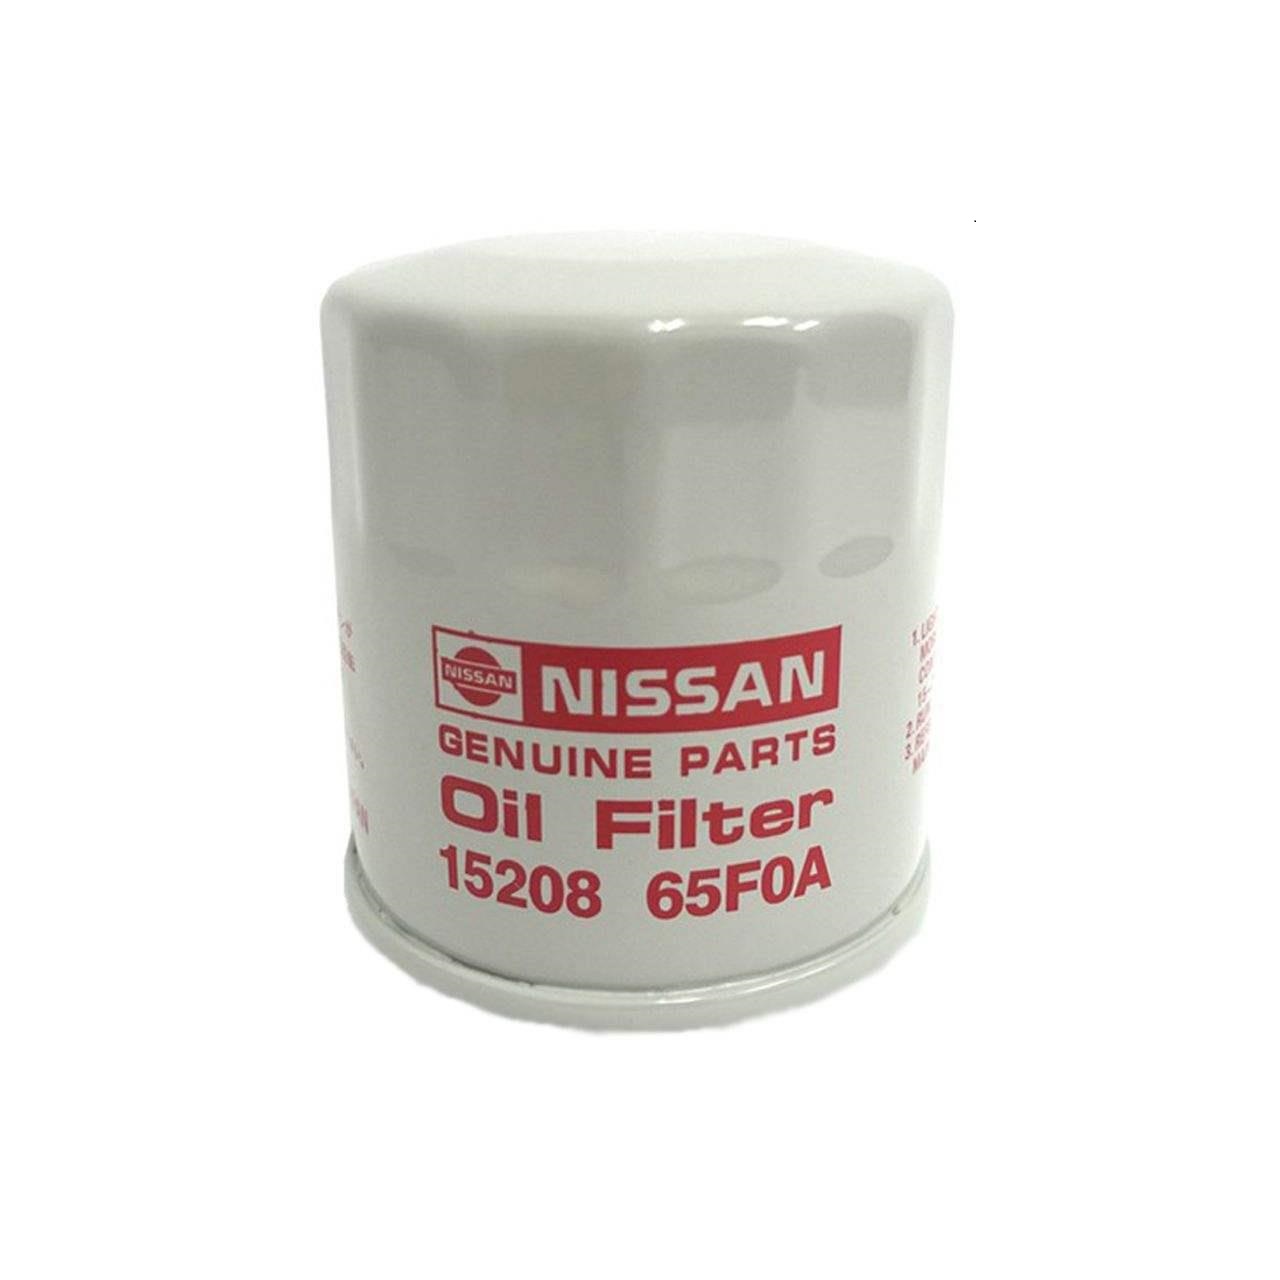 فیلتر روغن نیسان جنیون پارتس مدل 15208-65F0A مناسب برای نیسان ماکسیما